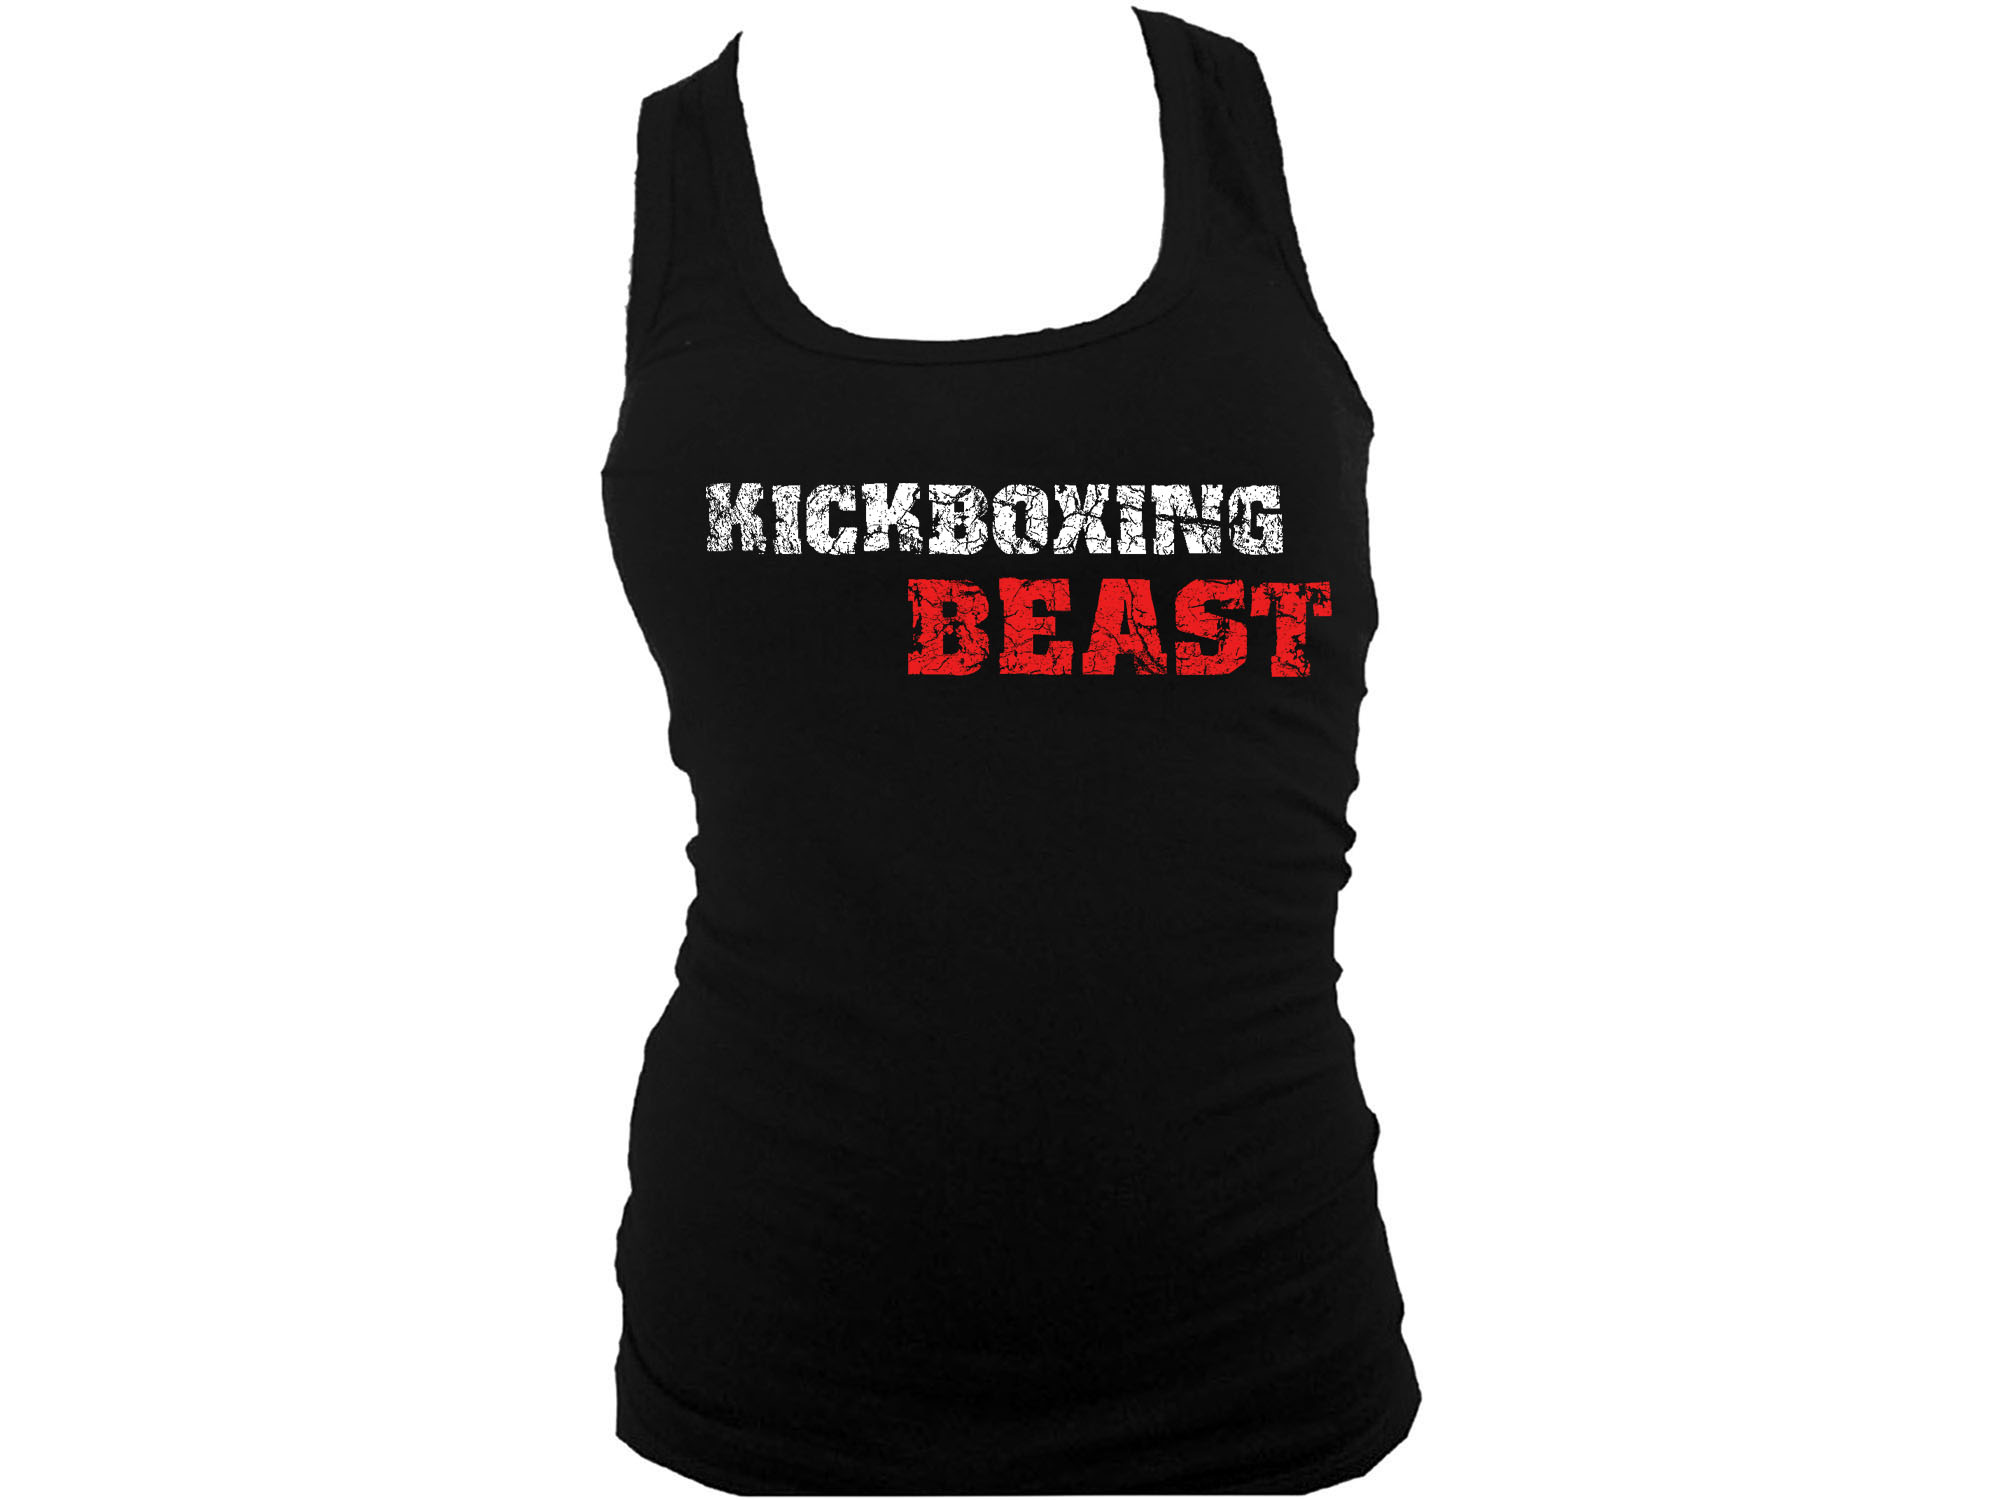 Kickboxing Beast distressed print women or teens tank top L/XL